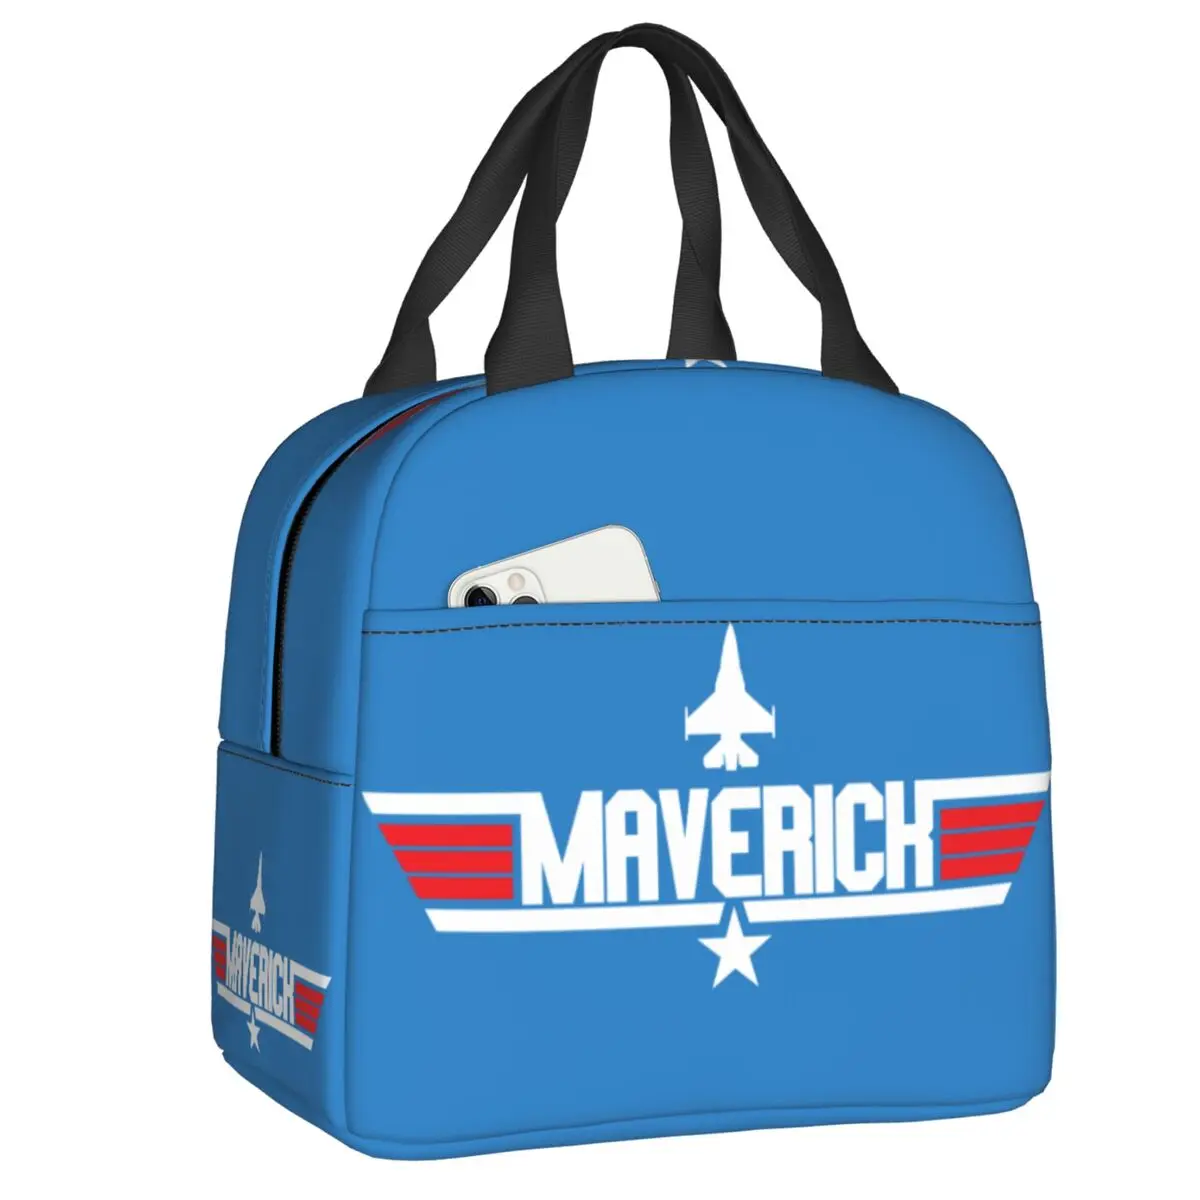 

Maverick Top Gun теплоизолированная сумка для ланча для женщин Tom круиз фильм Портативная сумка для ланча для школы работы пикника еды бэнто коробка